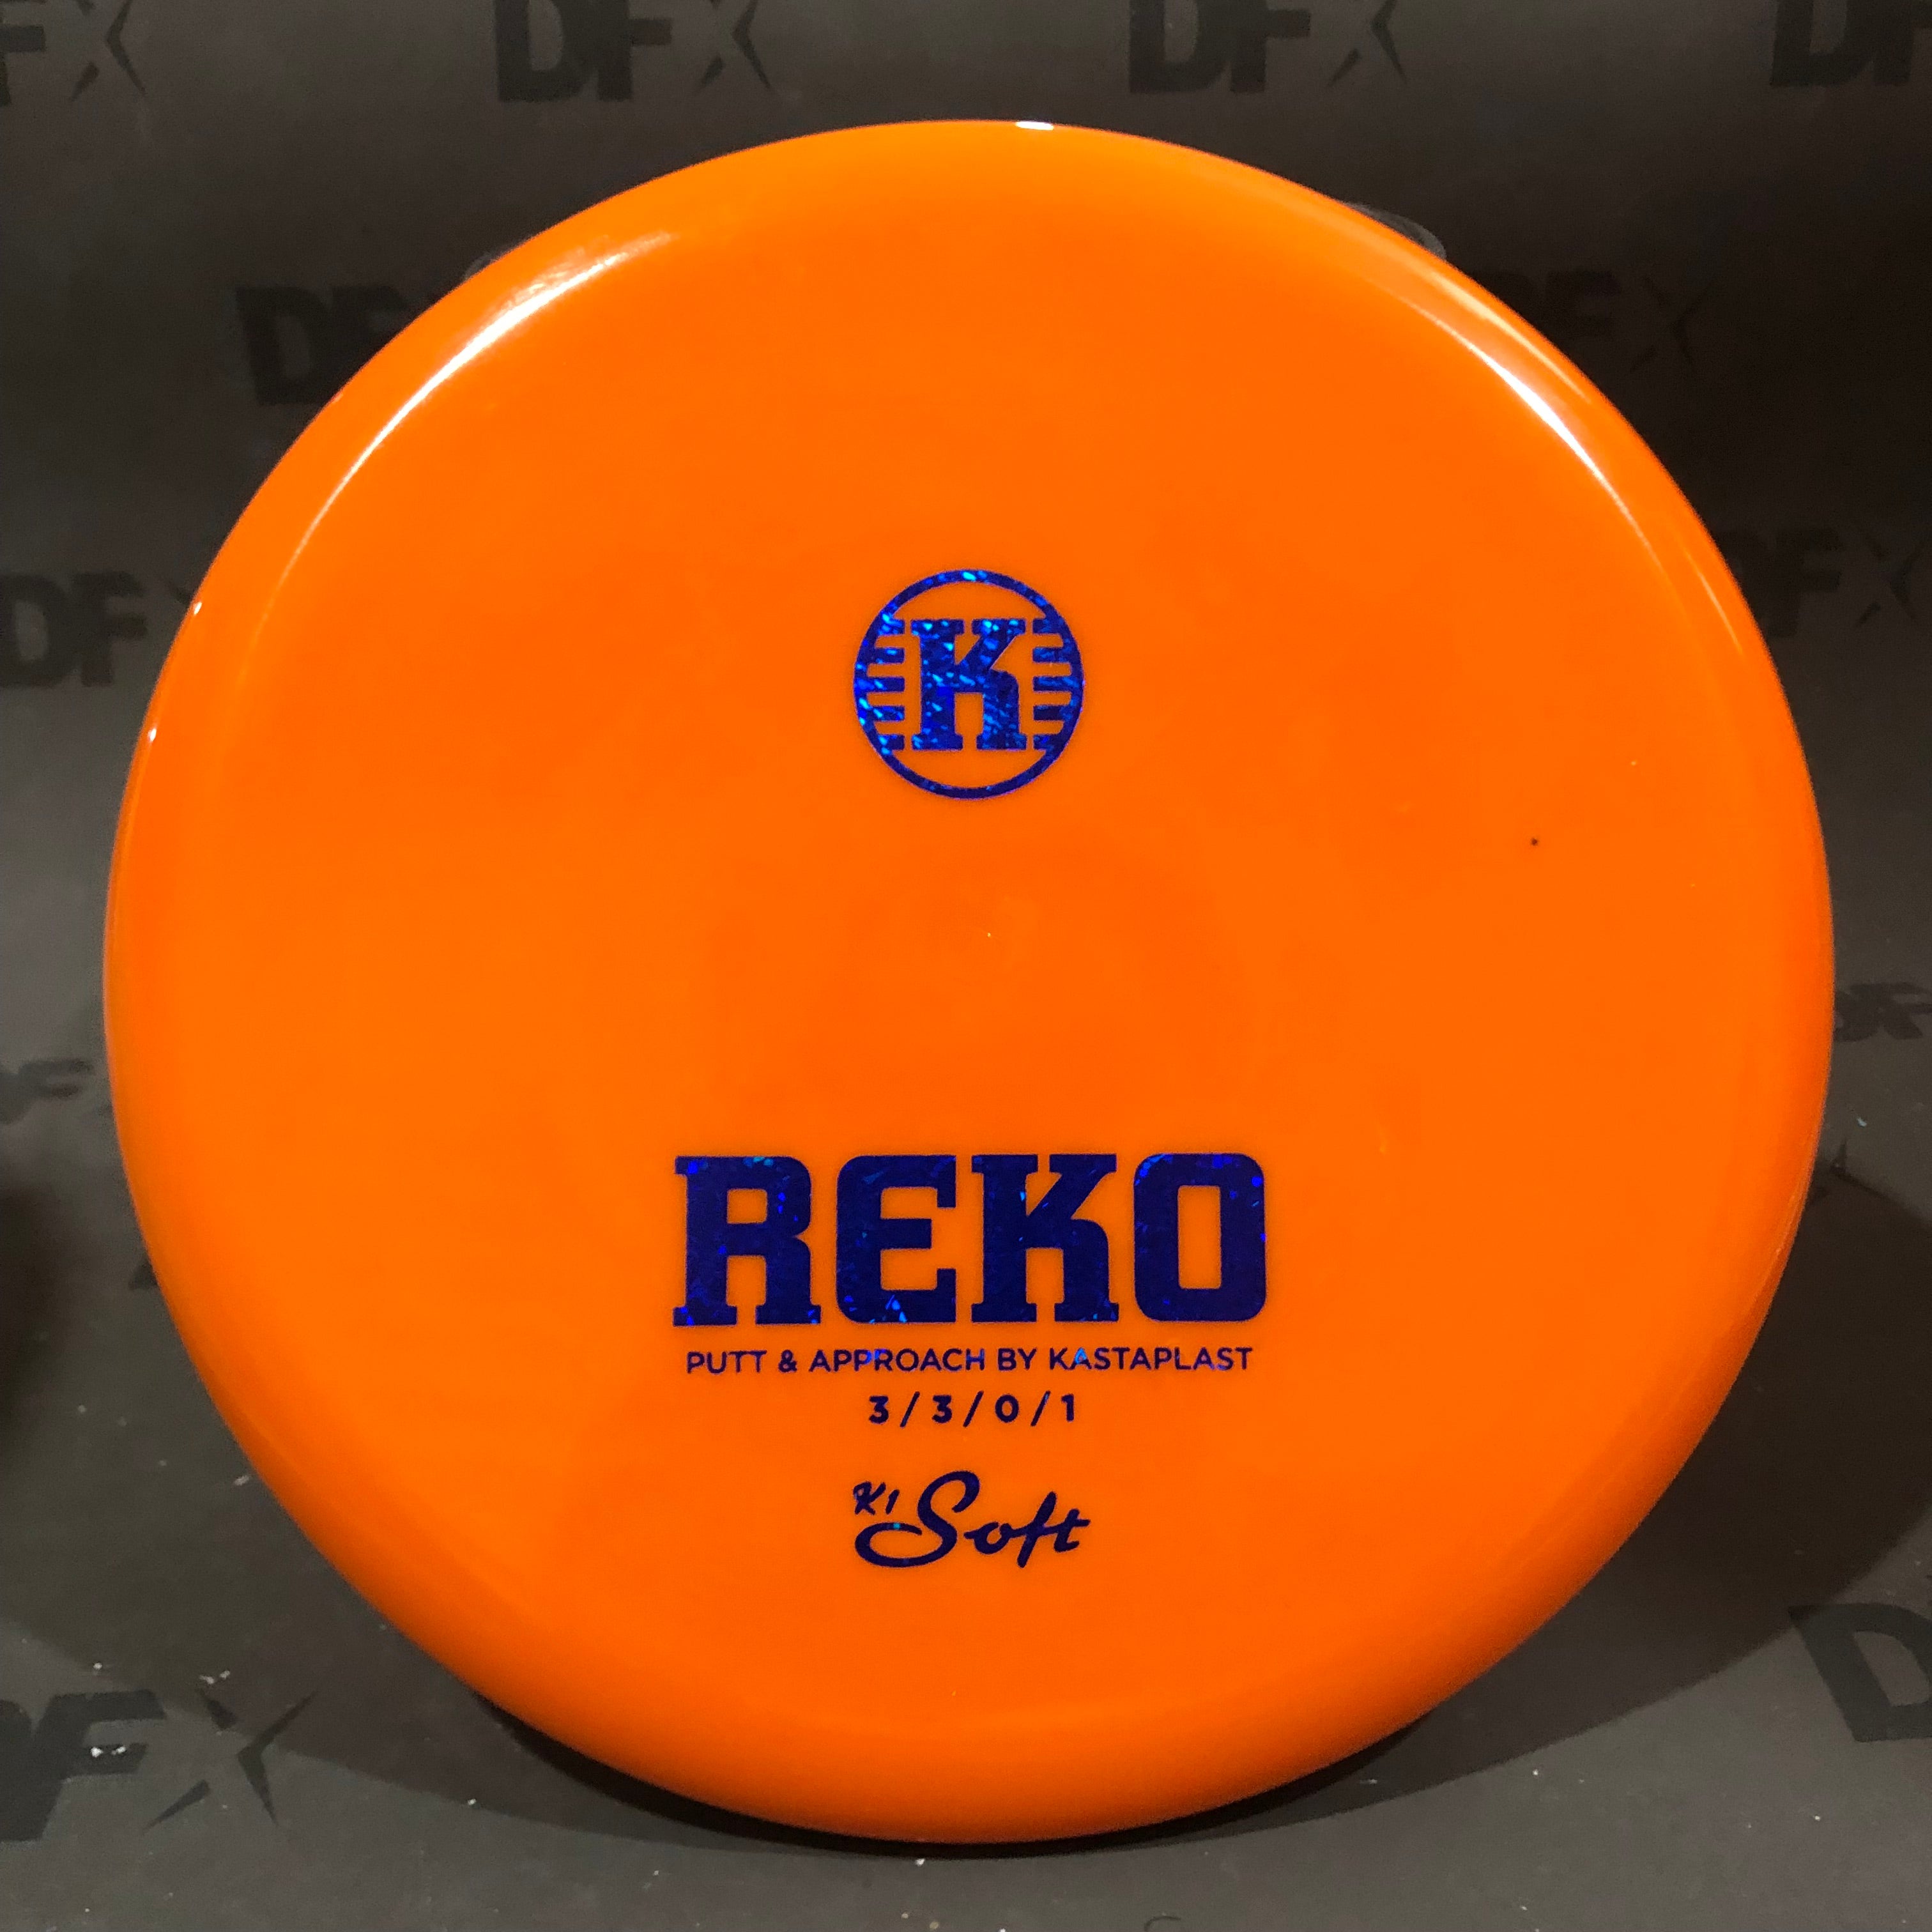 Stock Kastaplast Reko - K1 Soft